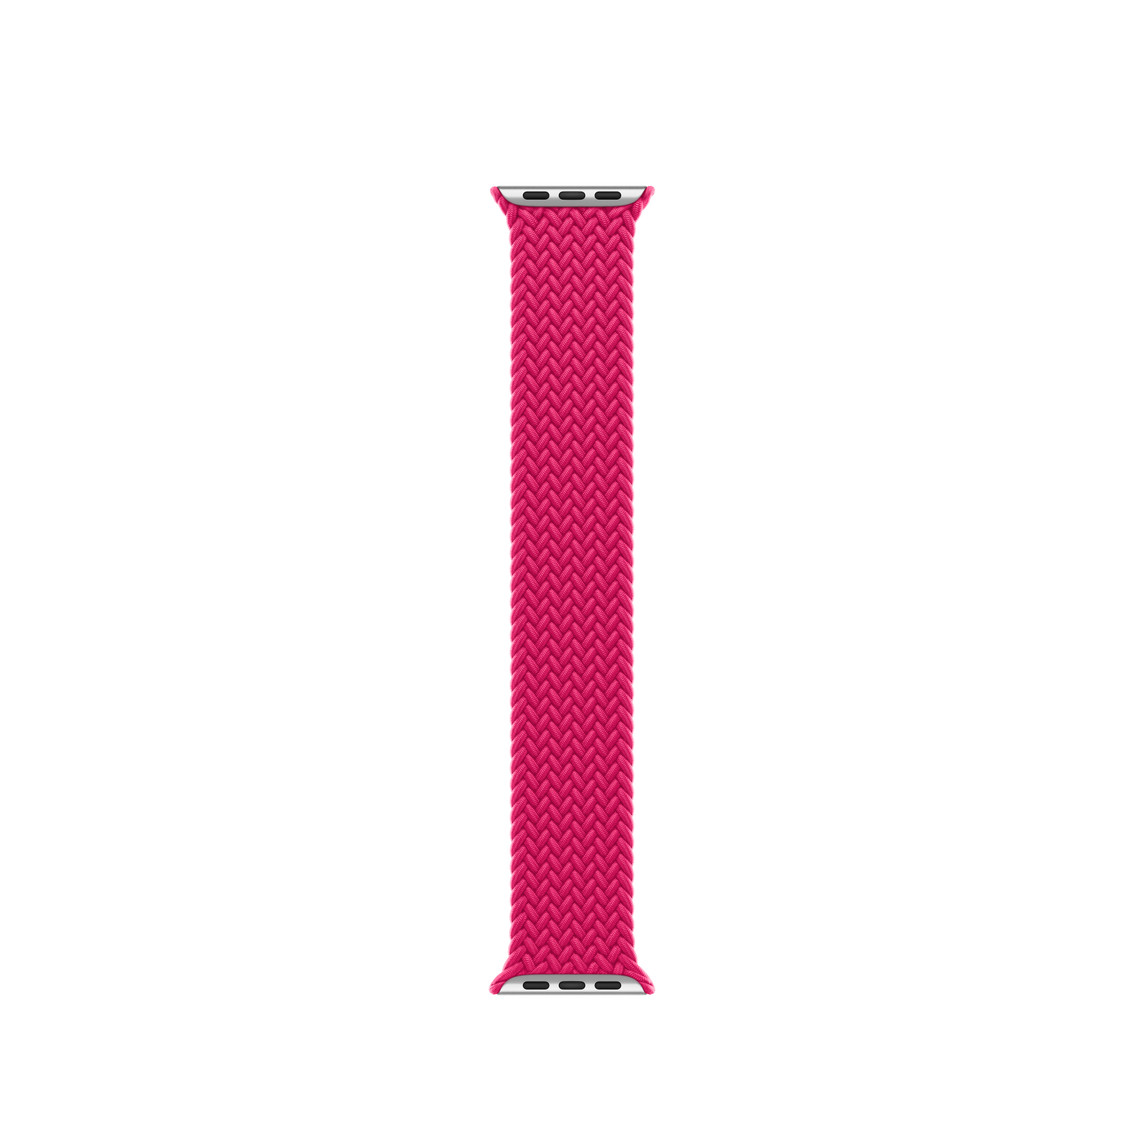 覆盆莓色編織單圈錶環，展示聚酯纖維織紋材質與矽膠線，沒有錶扣或扣環。